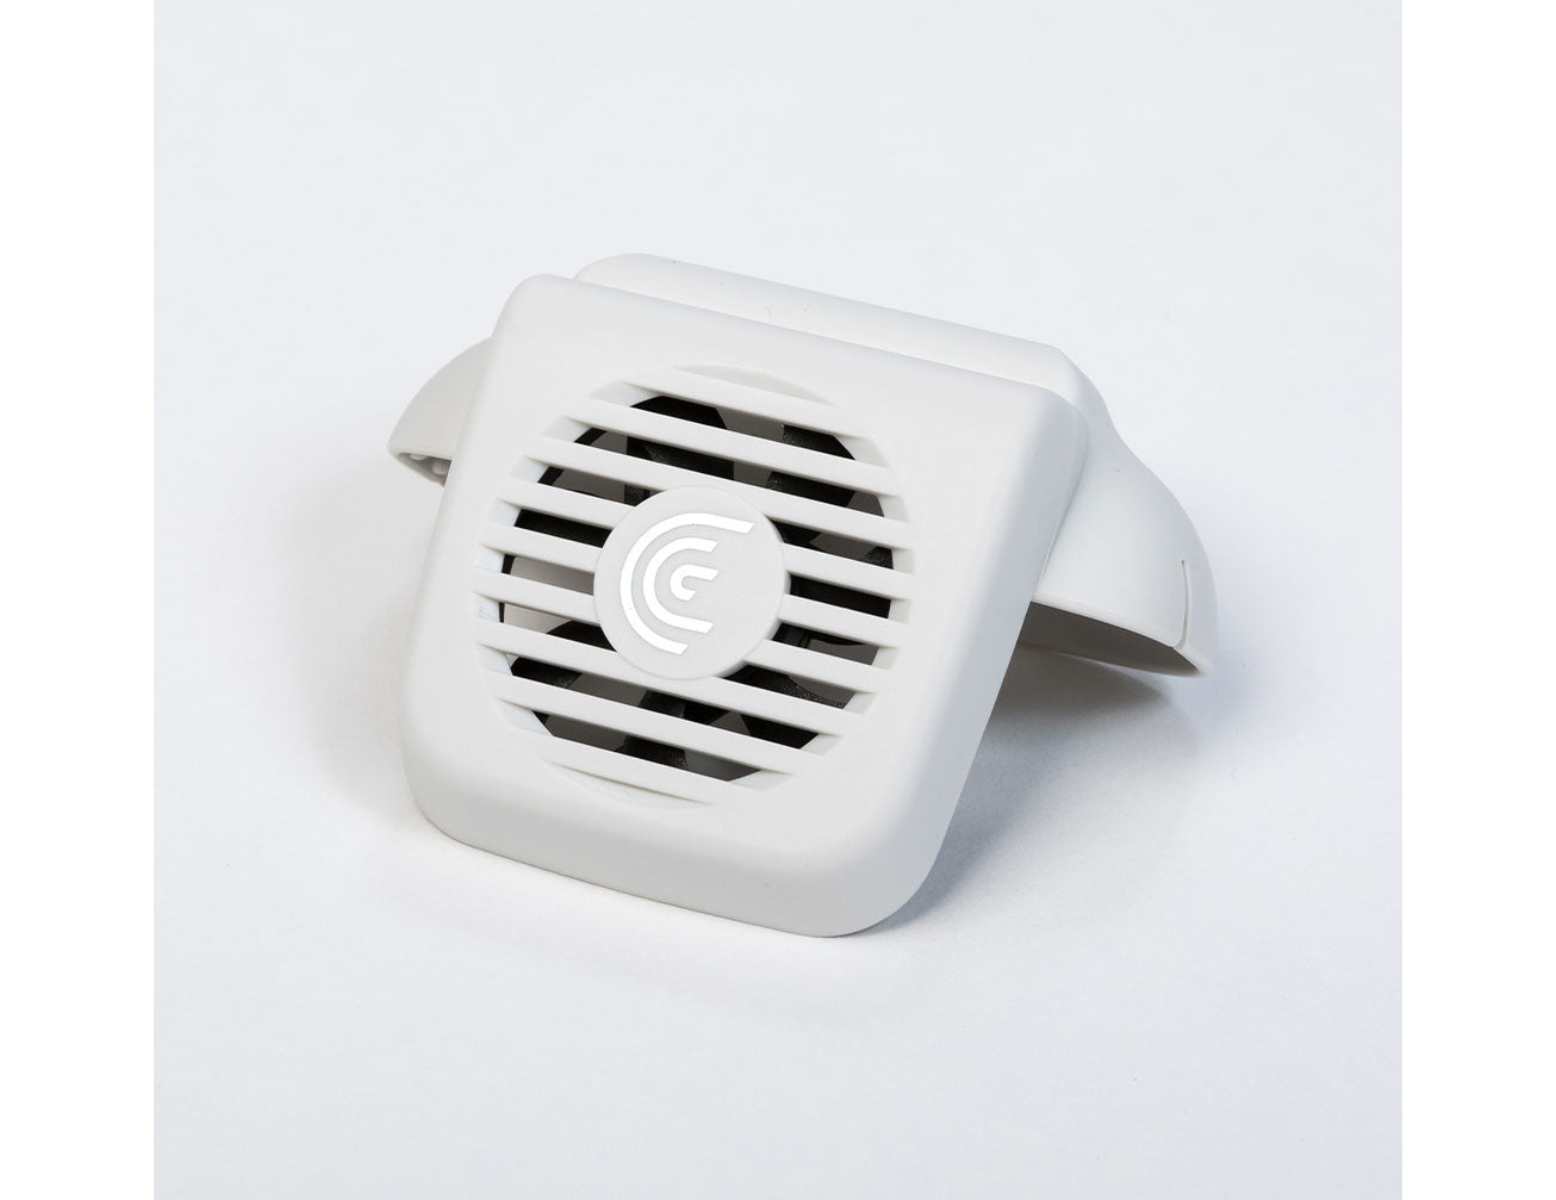 Ventilator voor Clarius handheld echografie toestel